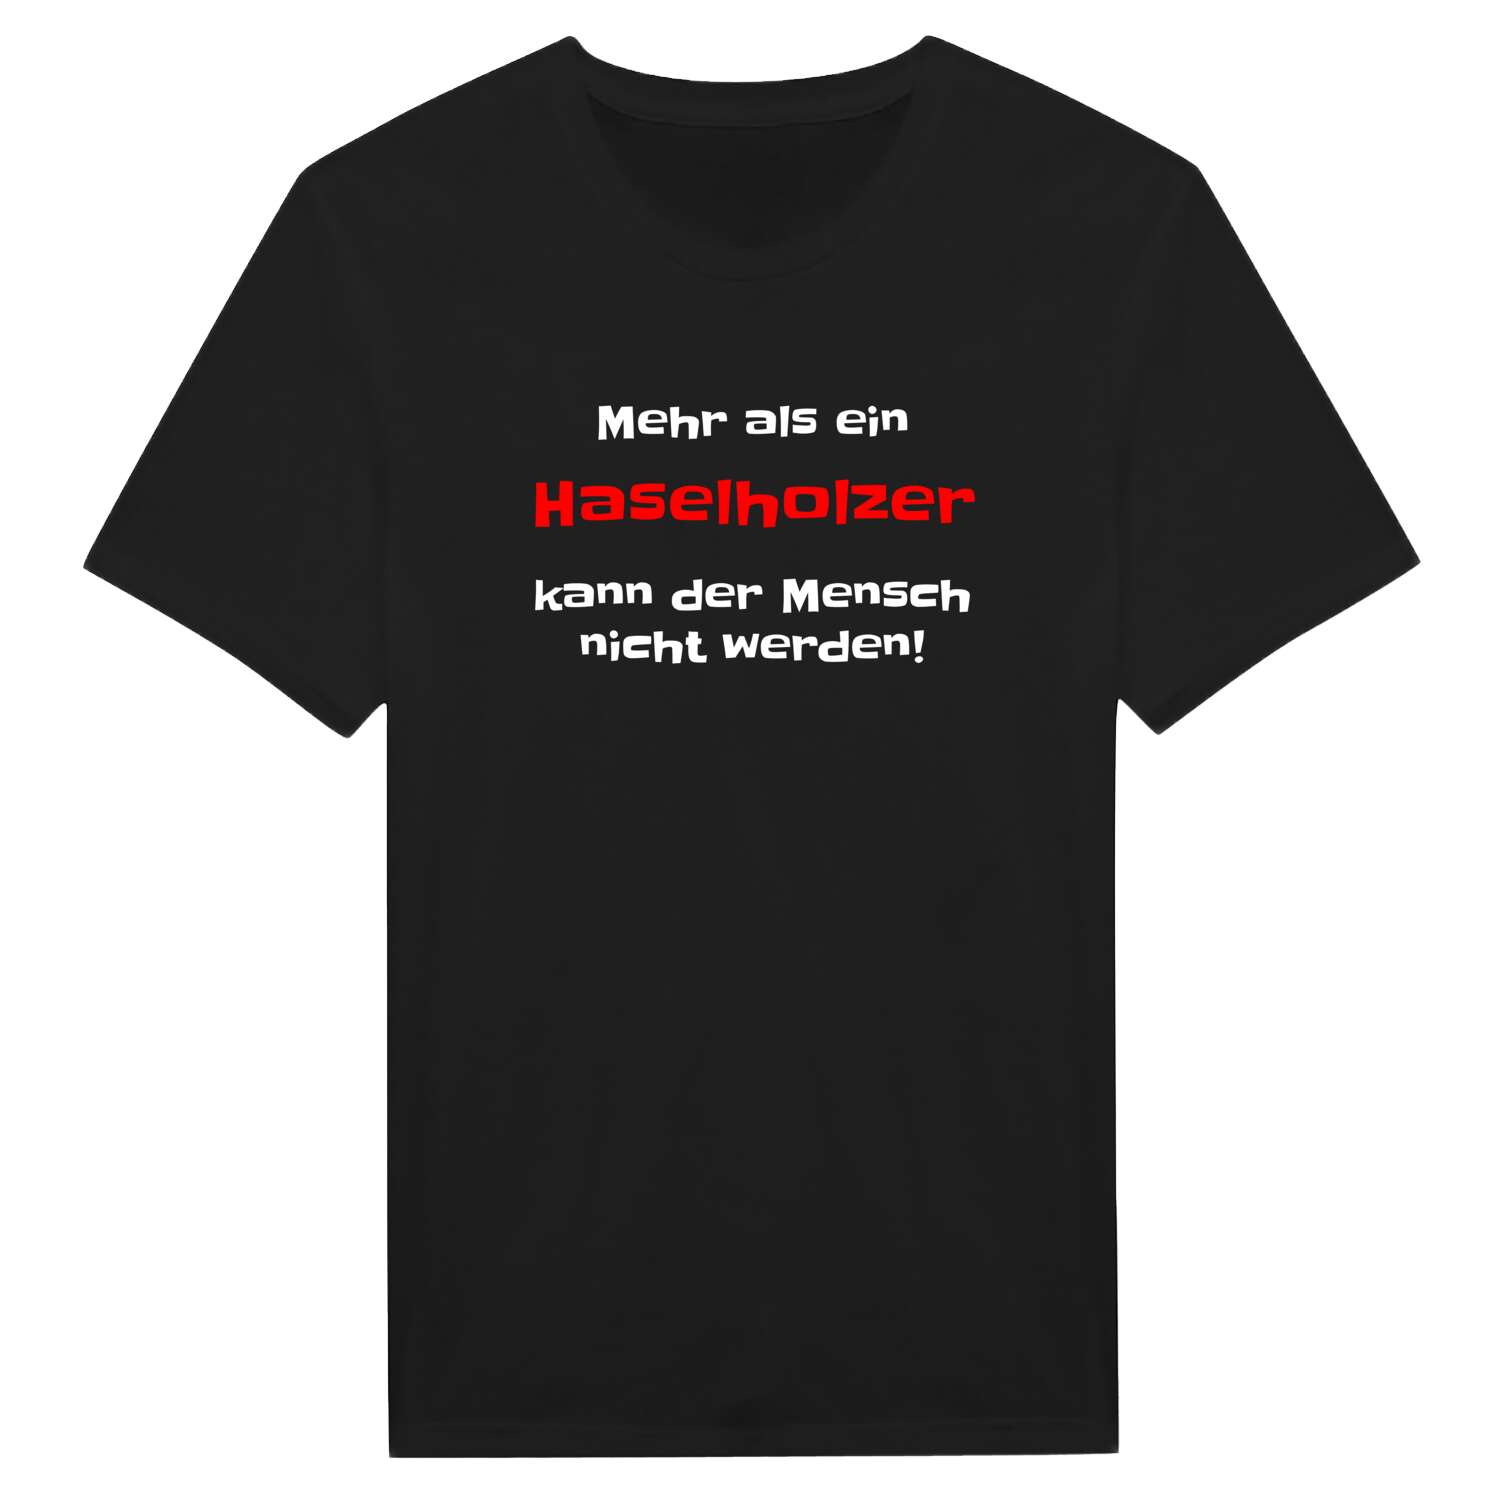 Haselholz T-Shirt »Mehr als ein«